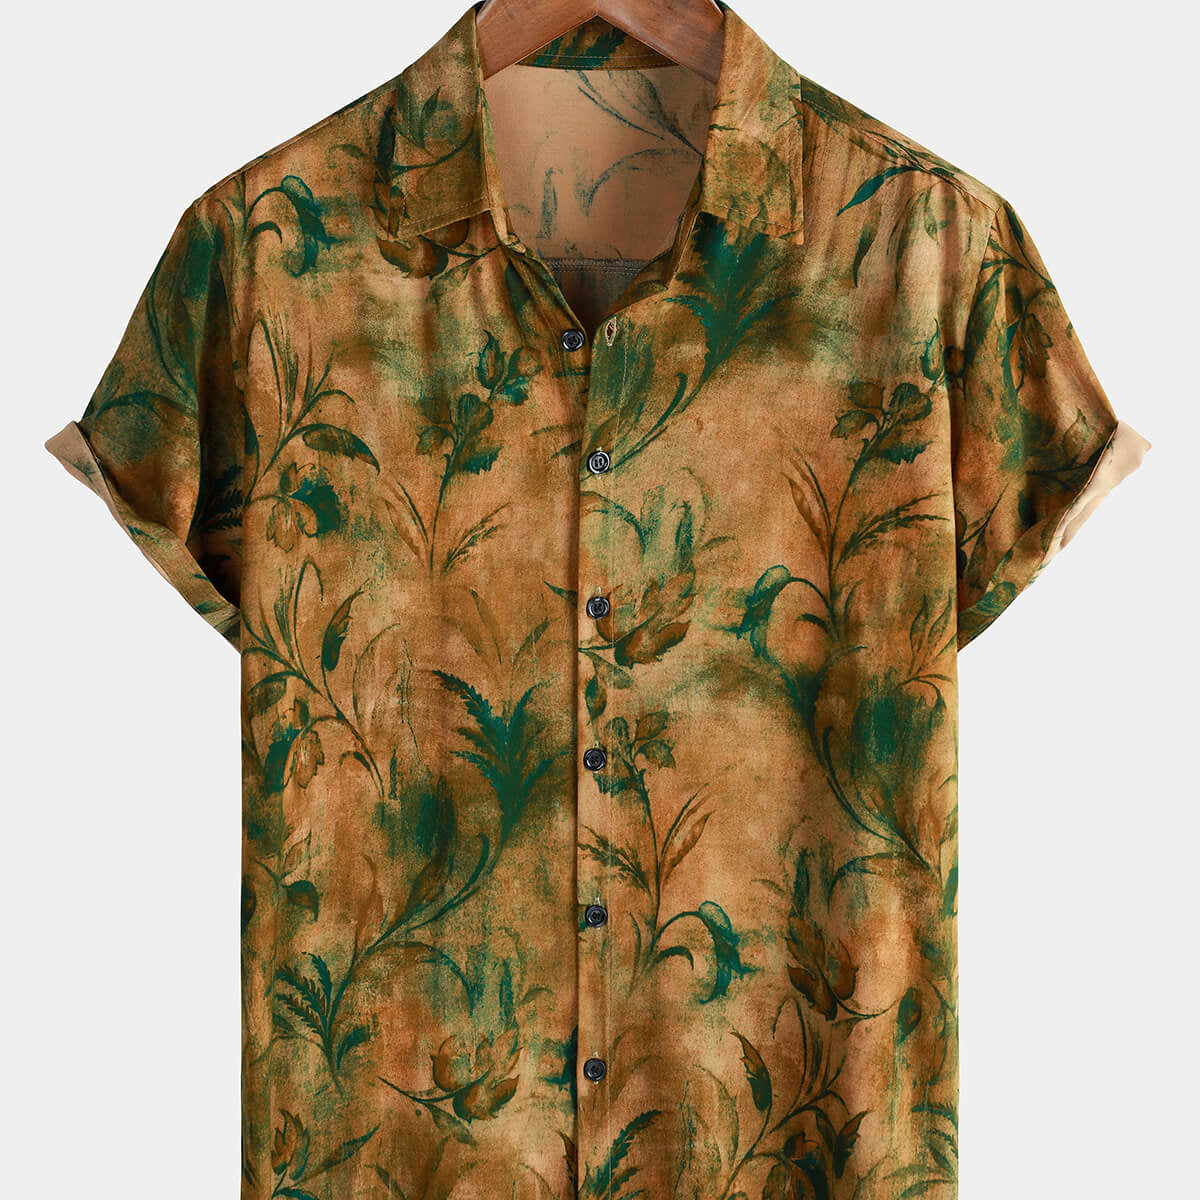 Chemise boutonnée à manches courtes pour hommes, Vintage, vacances, décontractée, florale, été